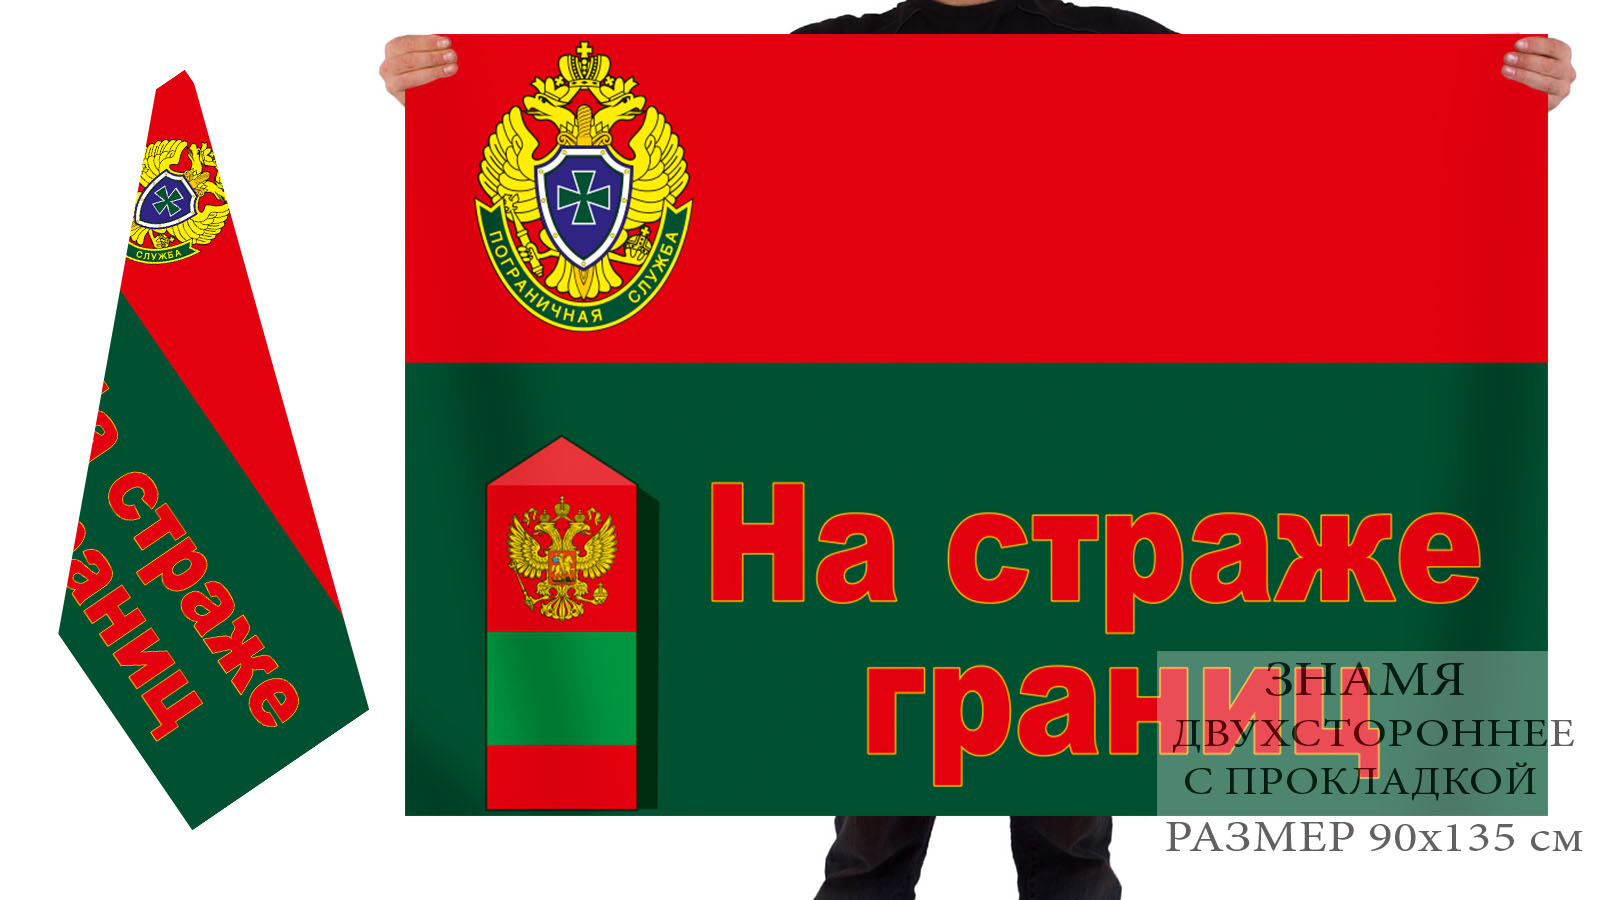 Двусторонний флаг Пограничной службы ФСБ Российской Федерации